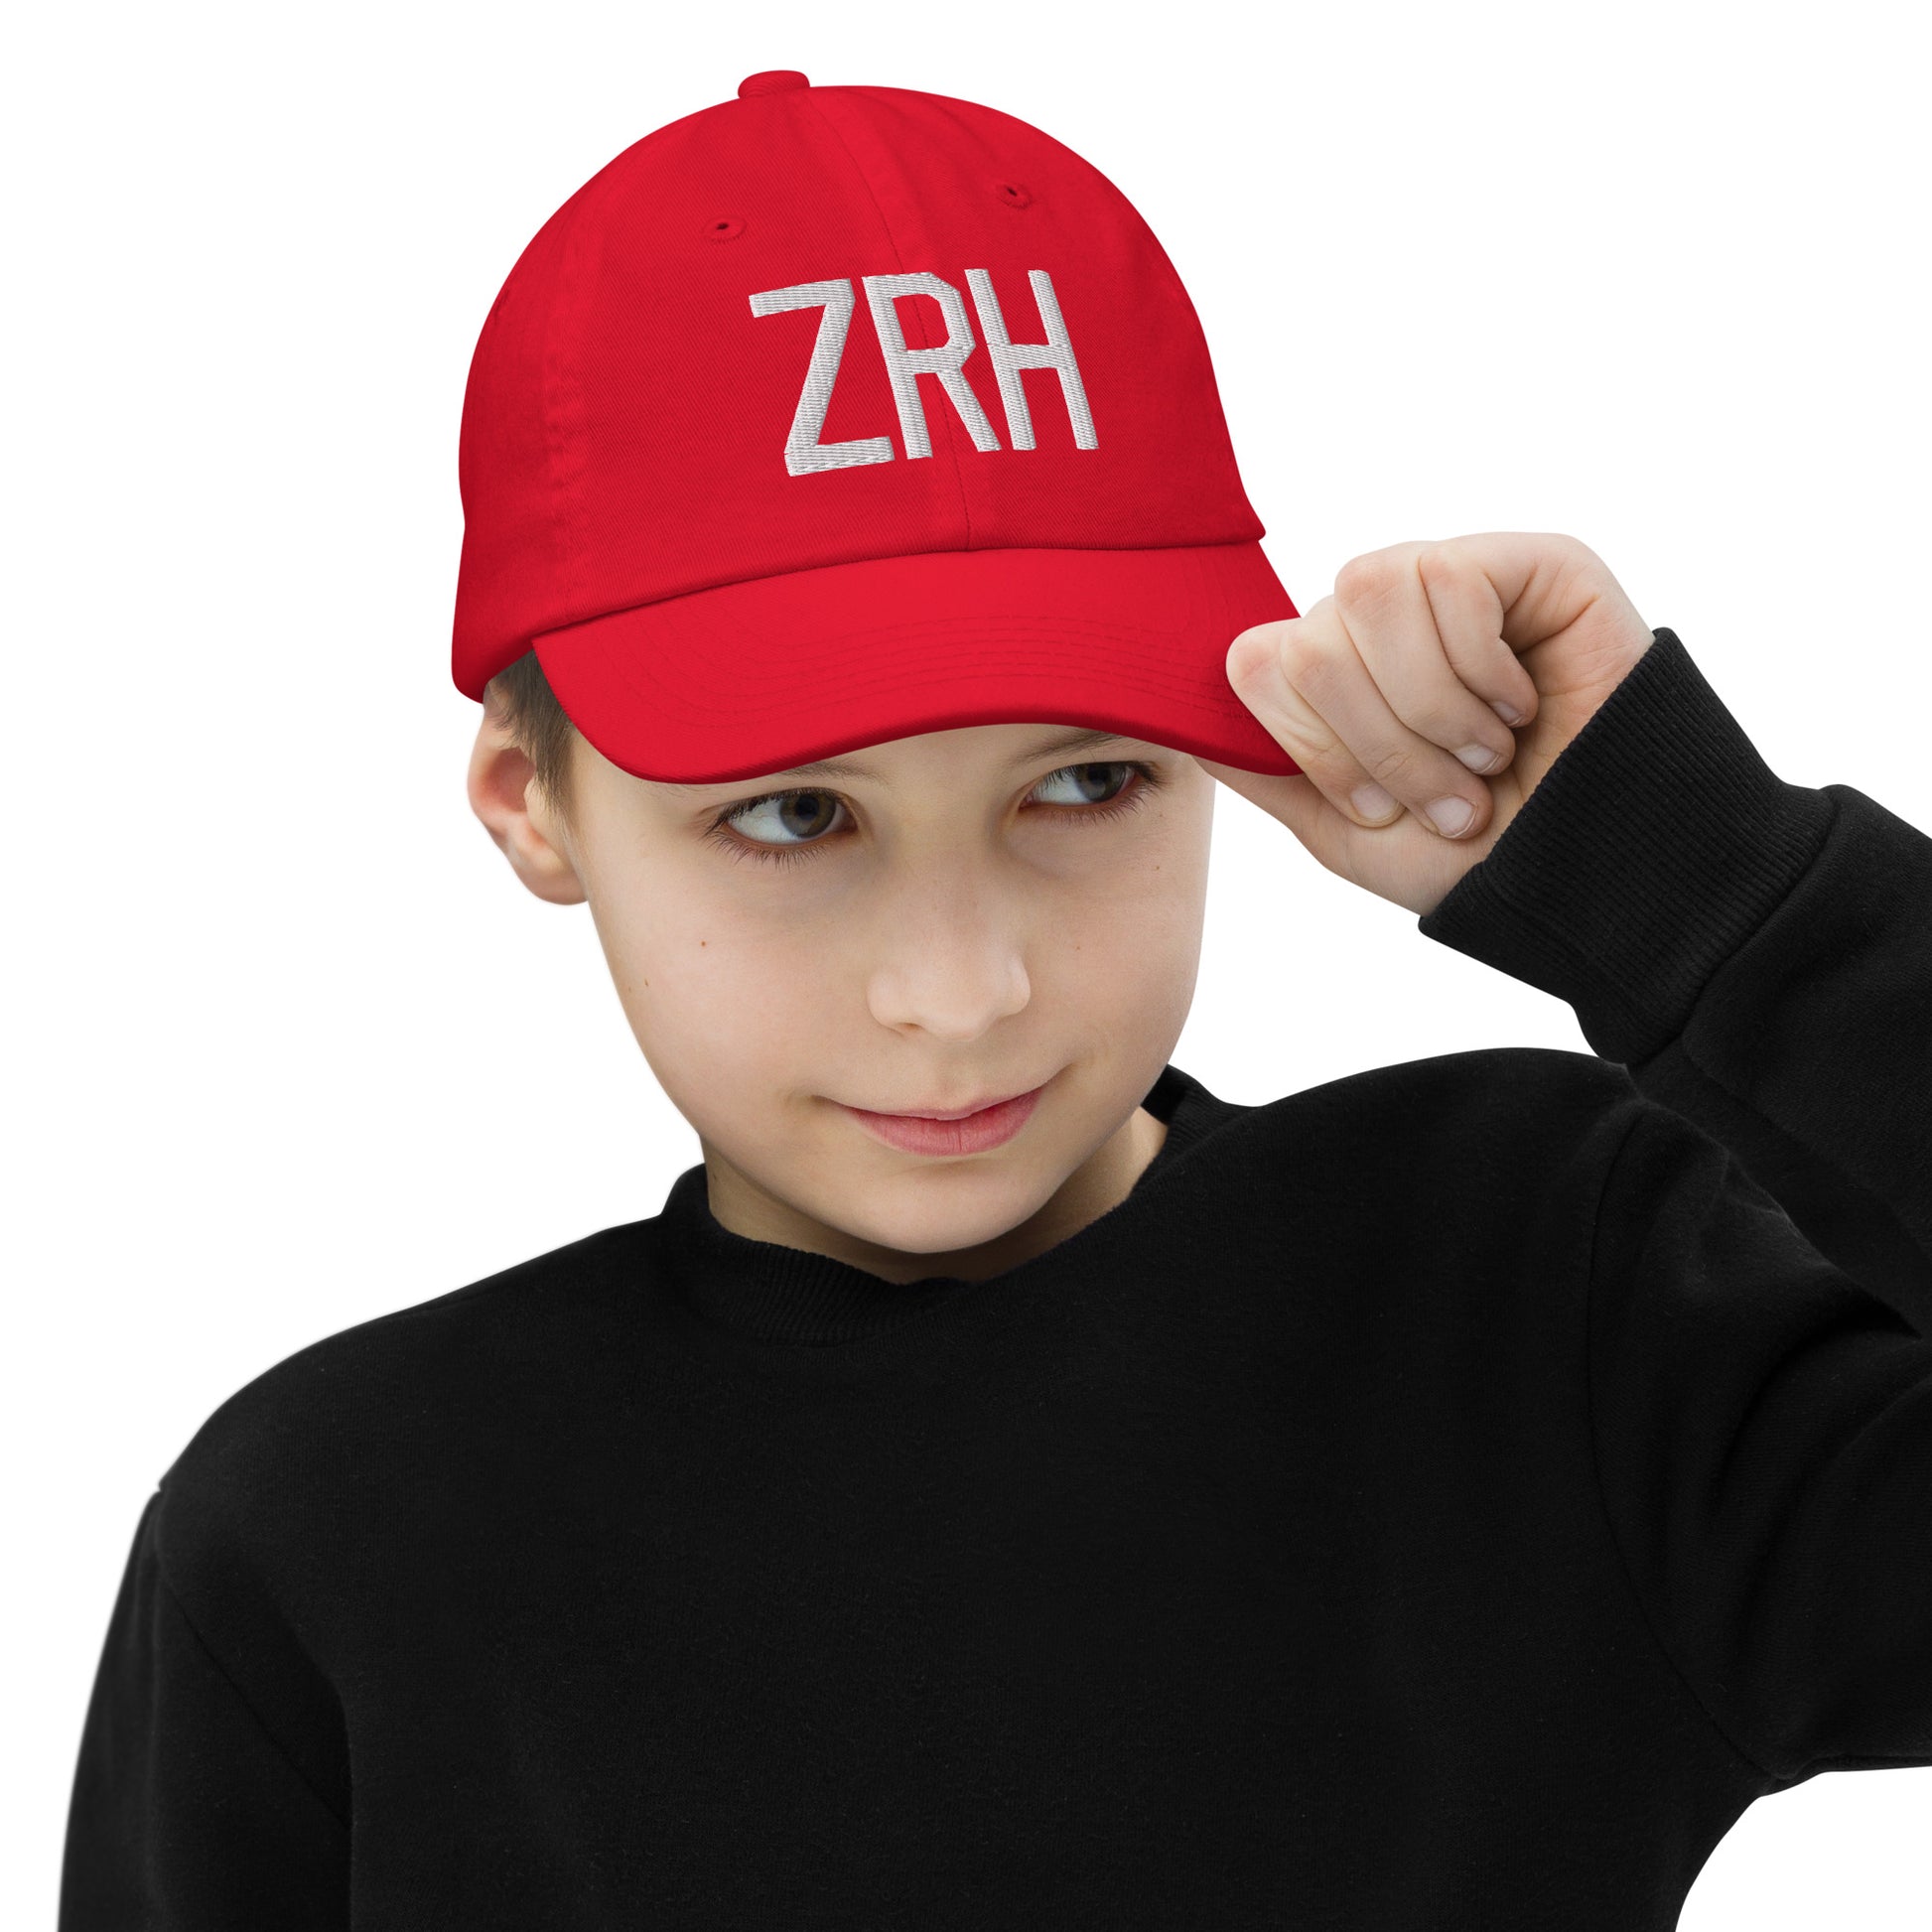 Airport Code Kid's Baseball Cap - White • ZRH Zurich • YHM Designs - Image 04